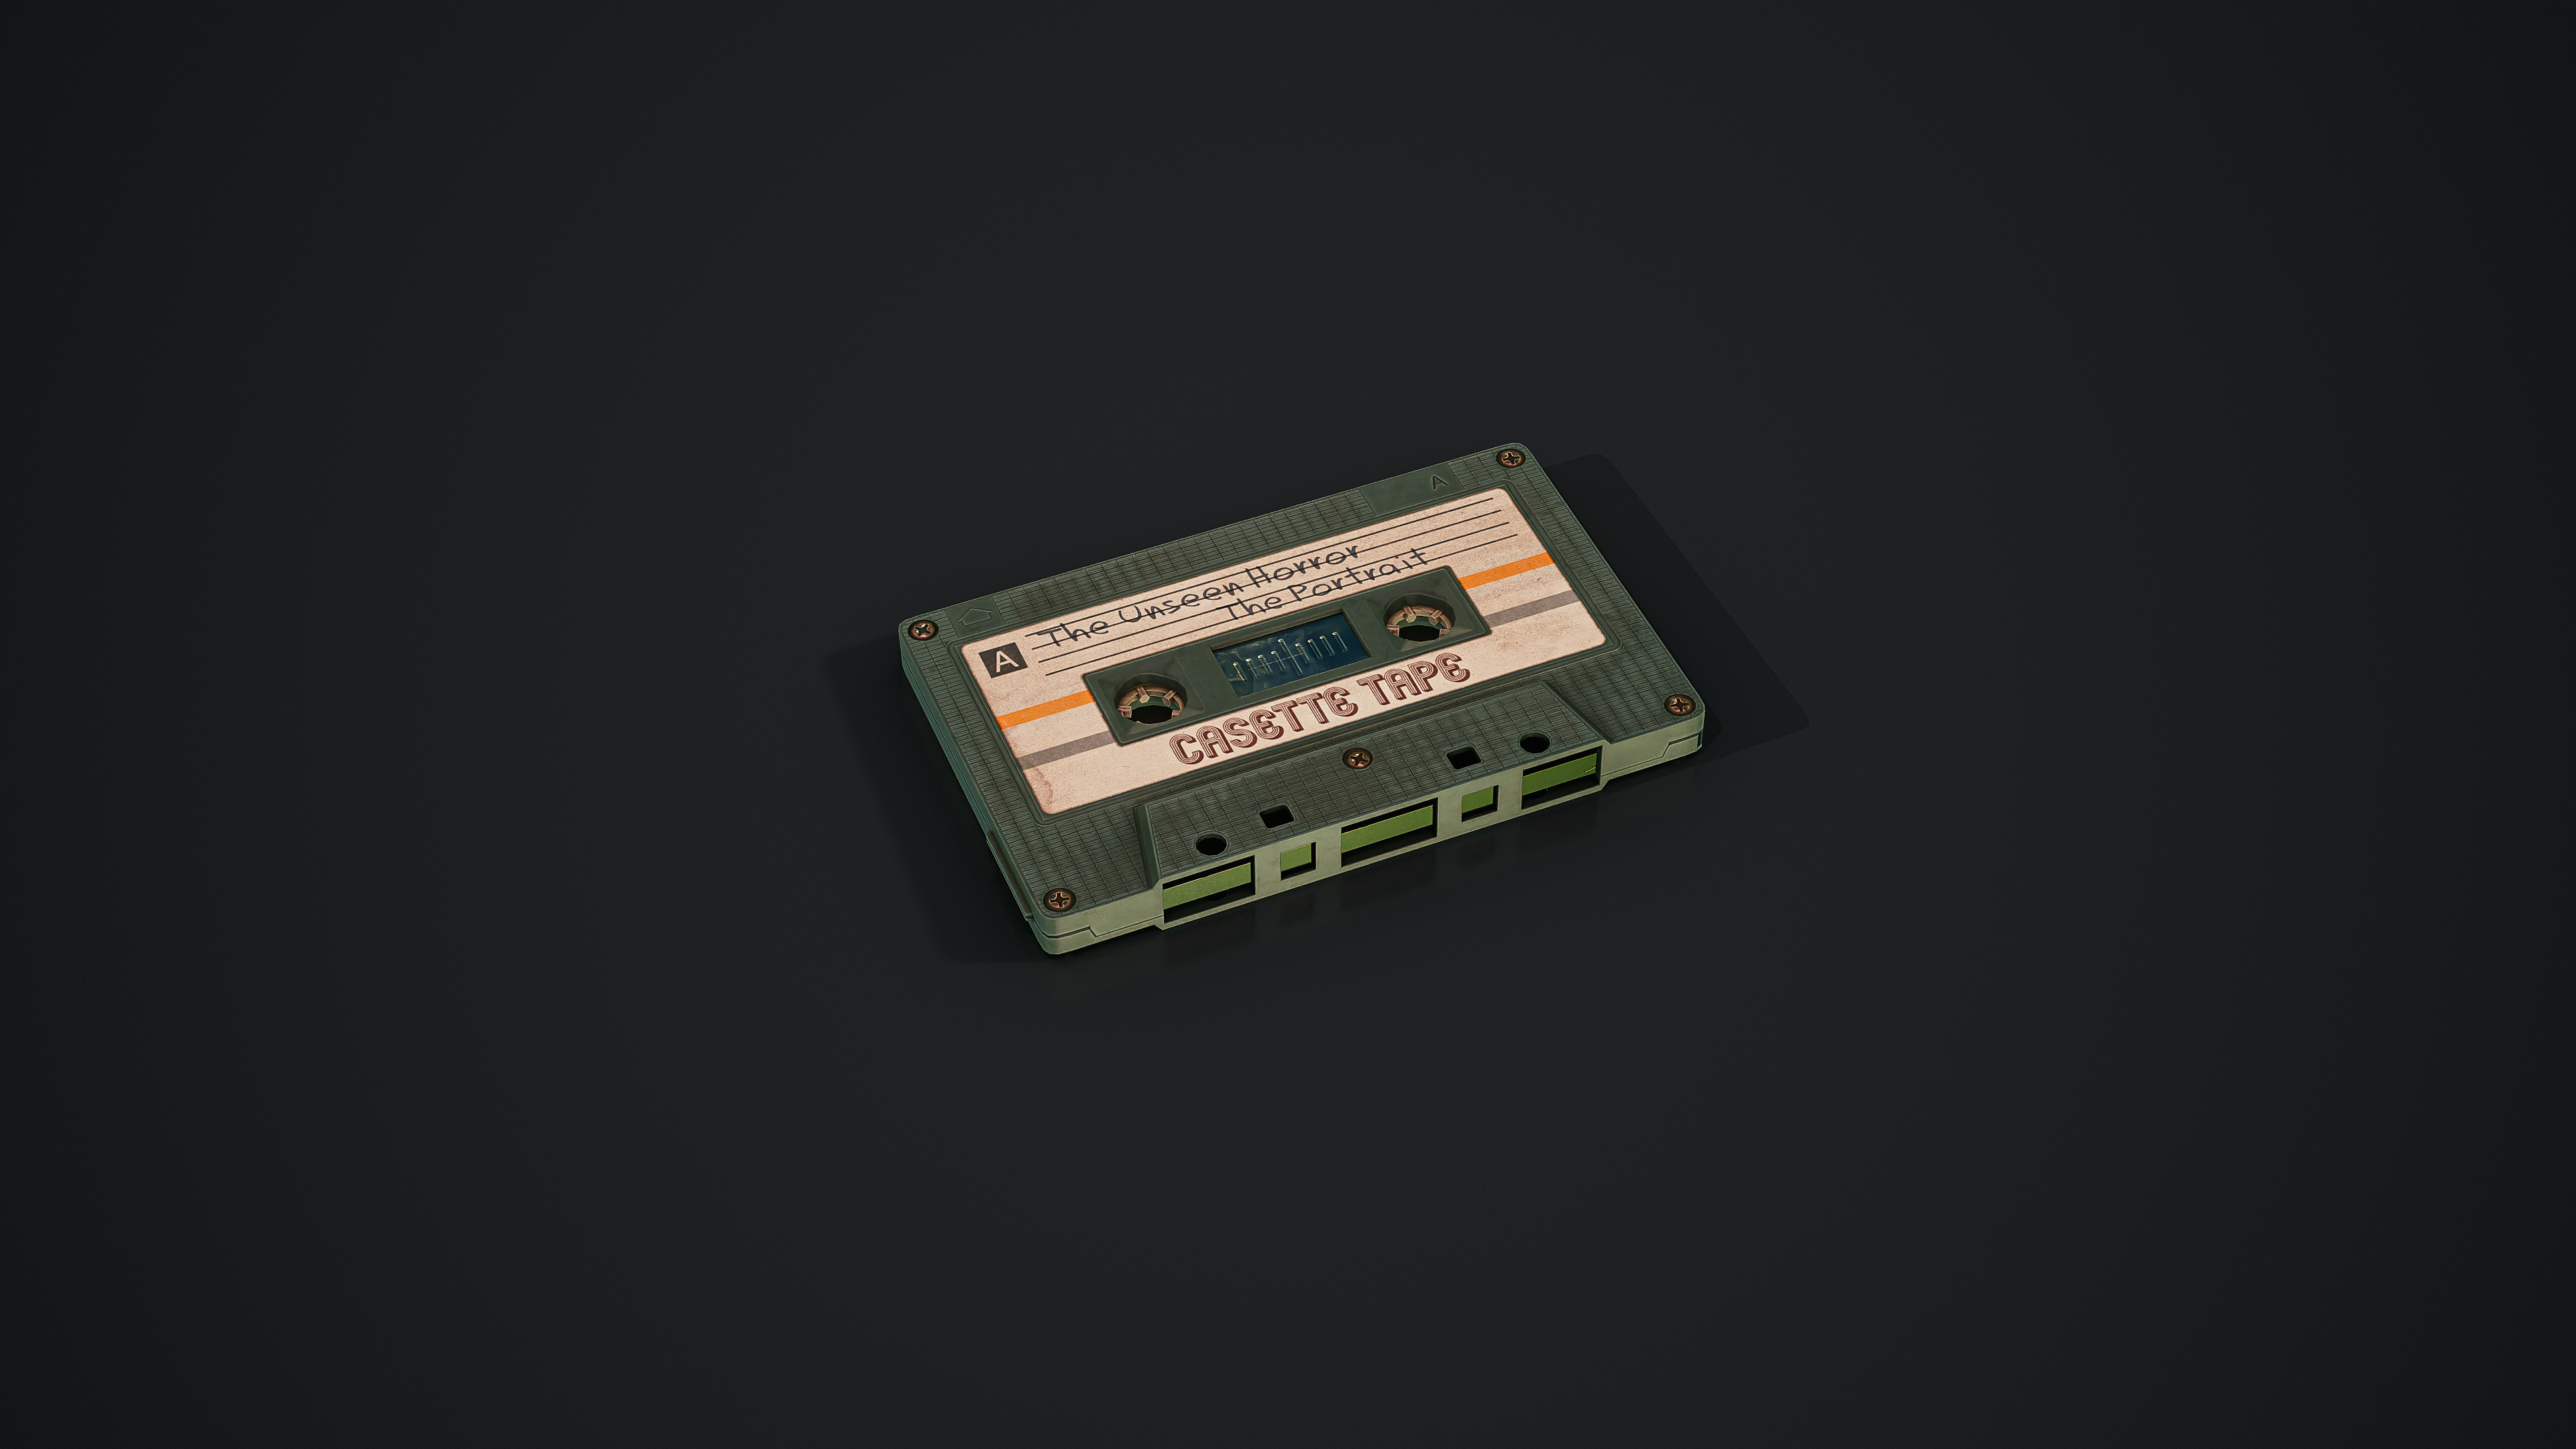 ArtStation - Pioneer RT1020 Tape Deck